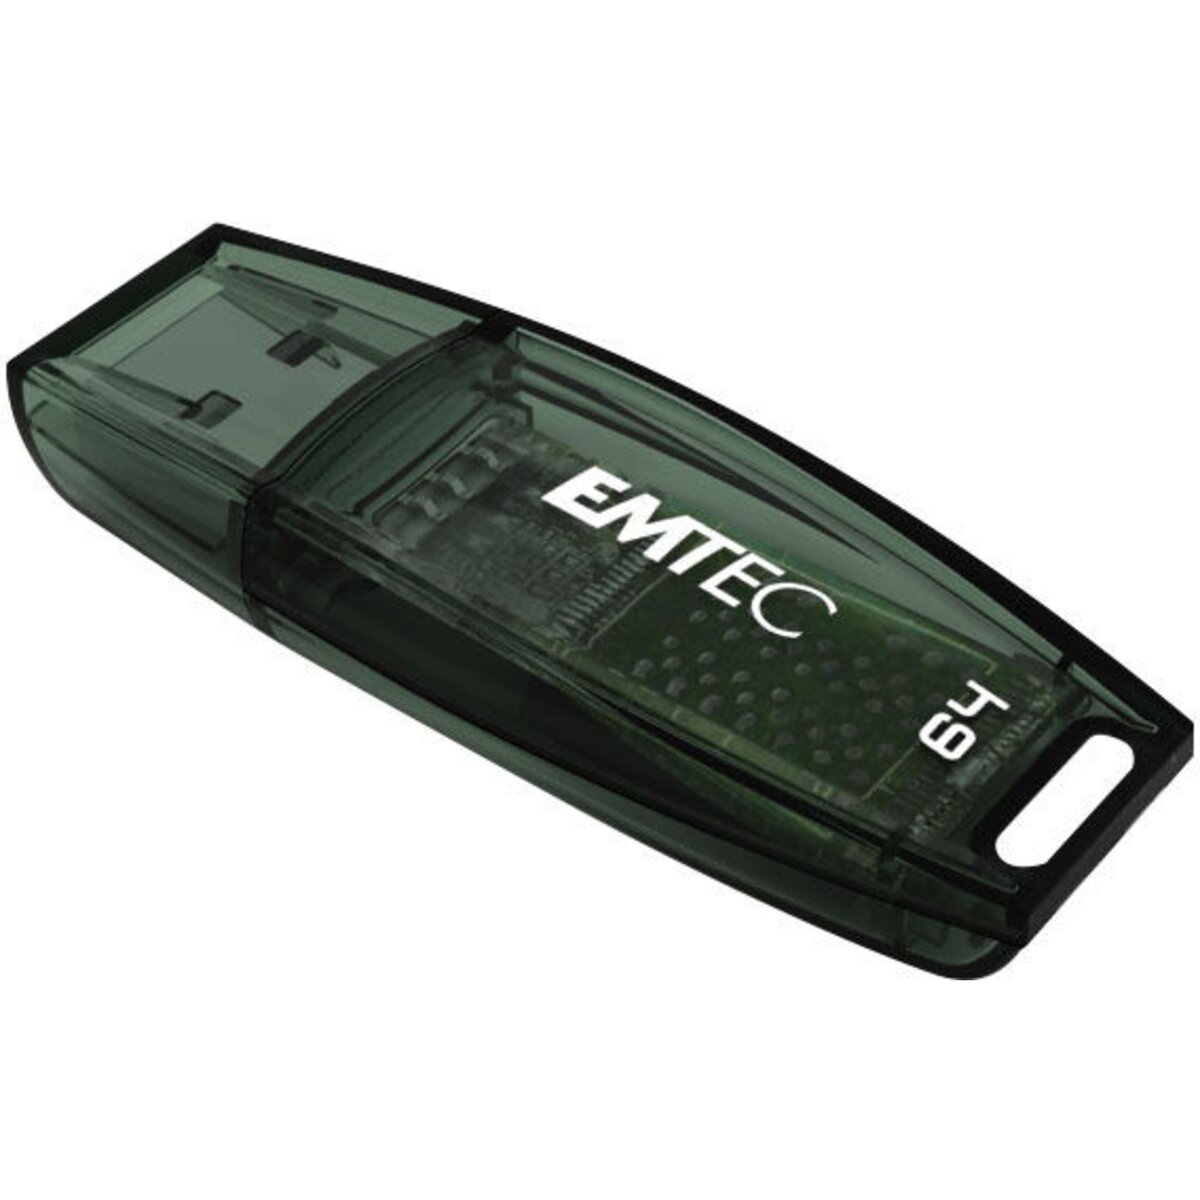 EMTEC Cle usb 64 Go C410 USB 3.0